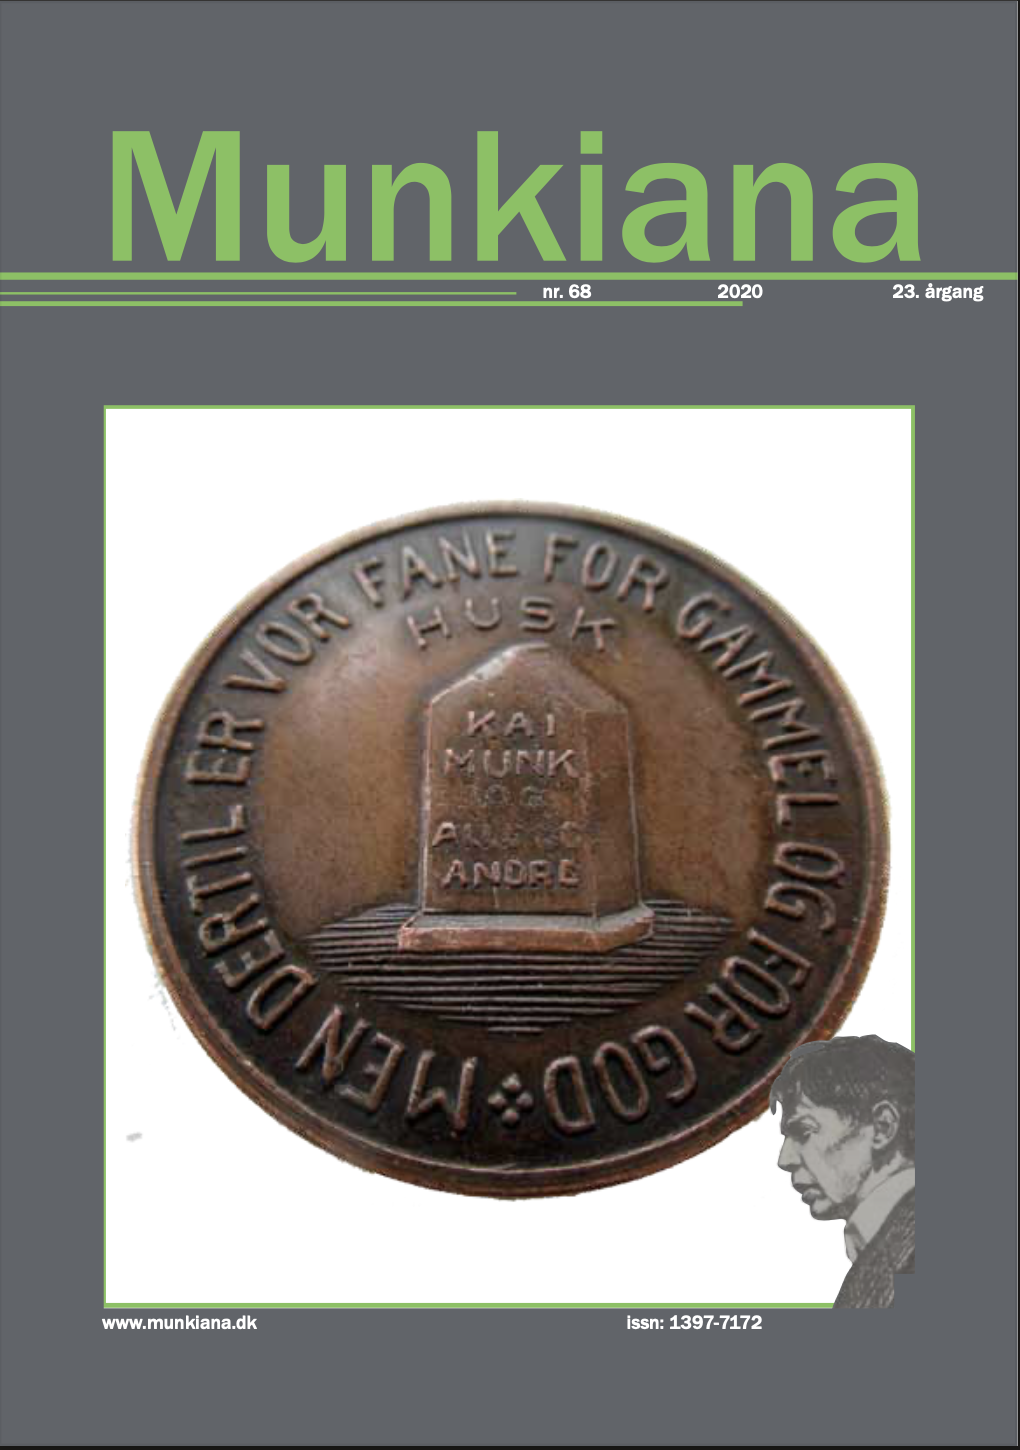 Klik på billedet for at downloade PDF med Munkiana nr. 68